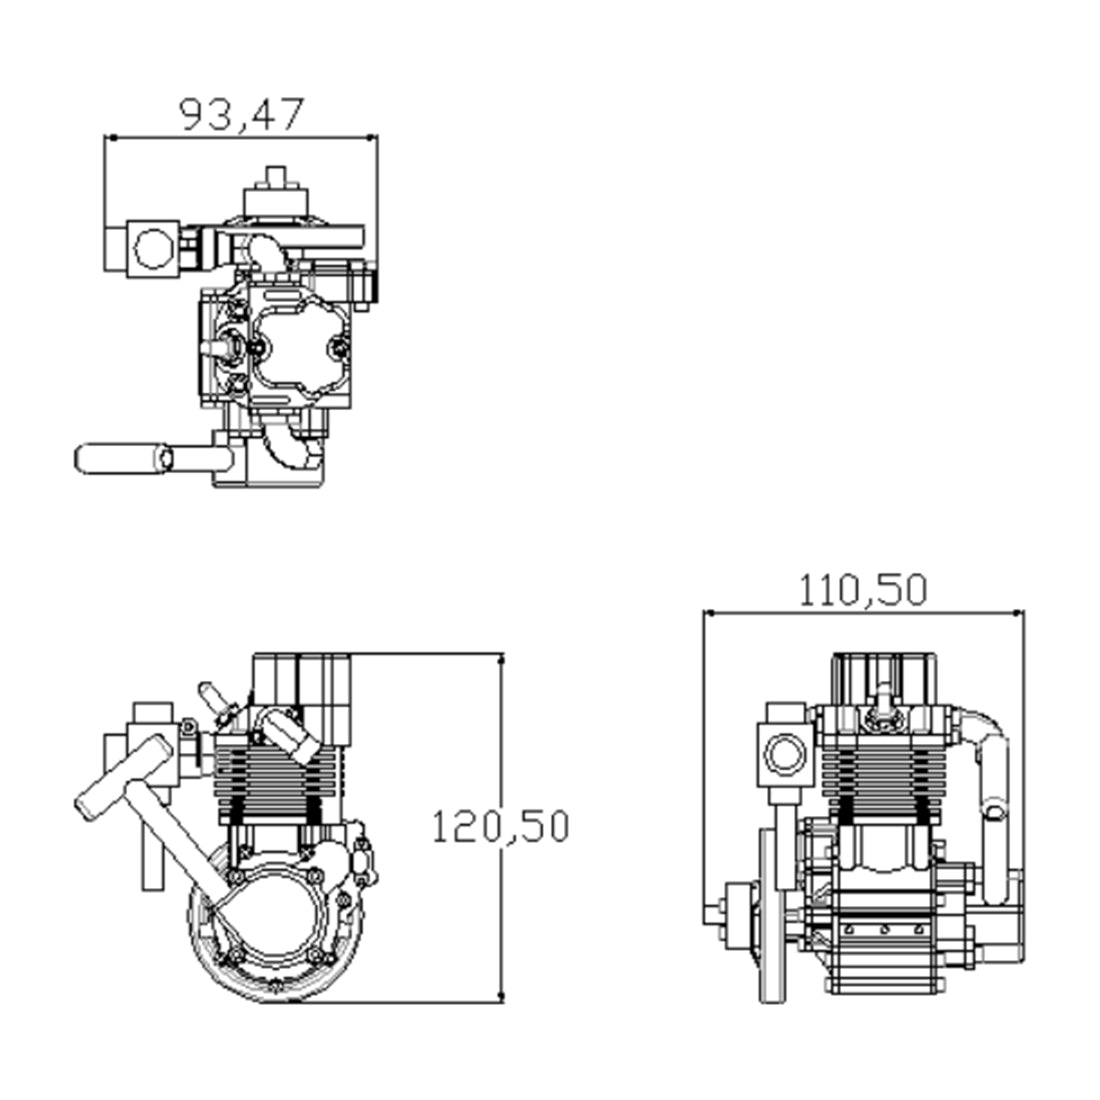 ENJOMOR GS-DK01 8CC OHV Inline Single-Cylinder Four-Stroke Air-Cooled Gasoline Engine Model enginediyshop